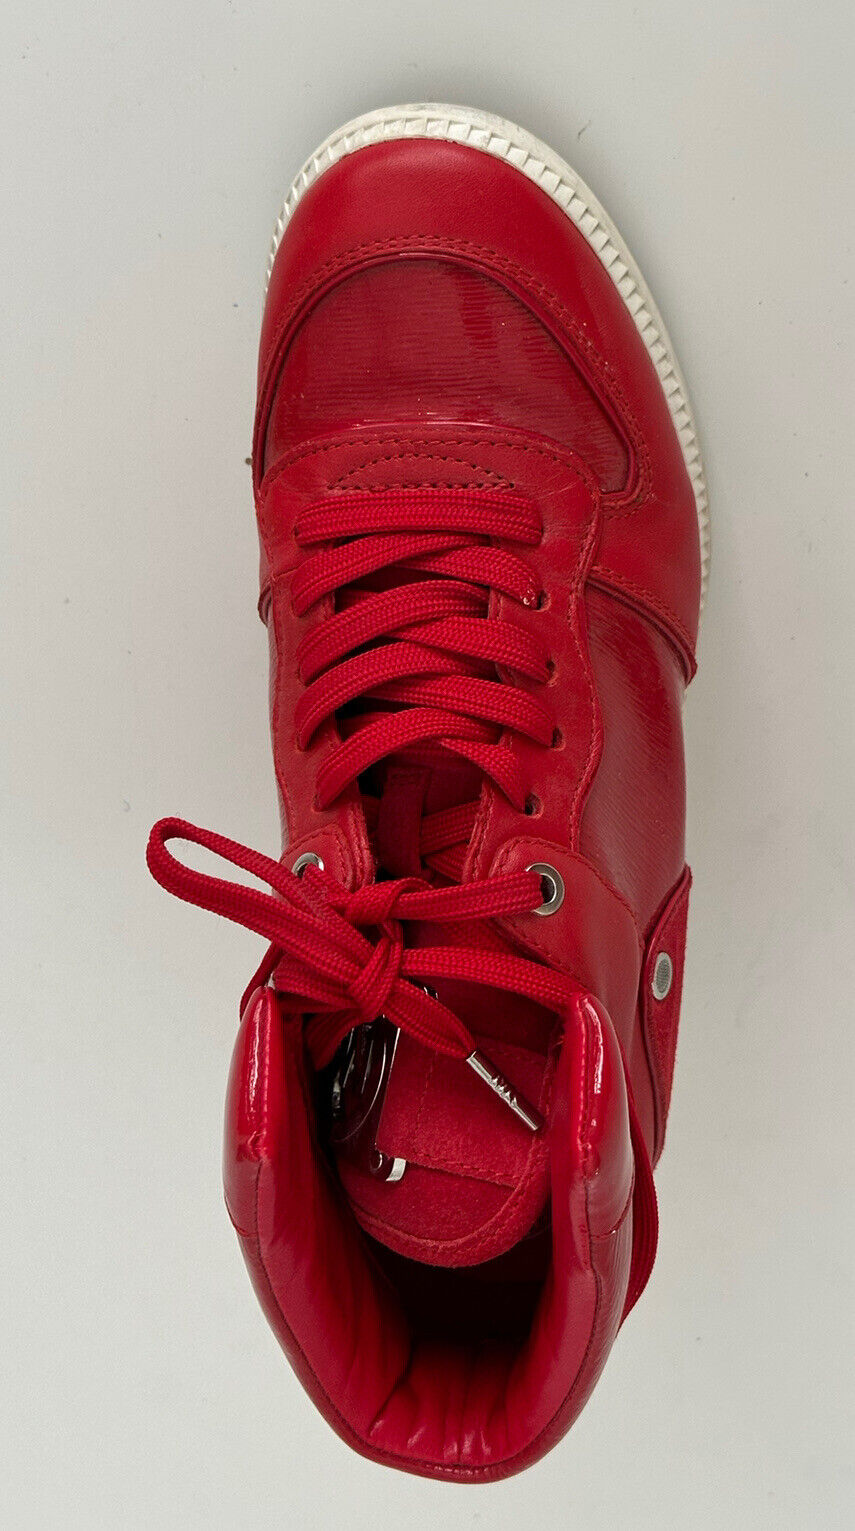 Michael Kors Nikko High Top Ledersneaker Rot Größe 8 US (38,5 Euro)